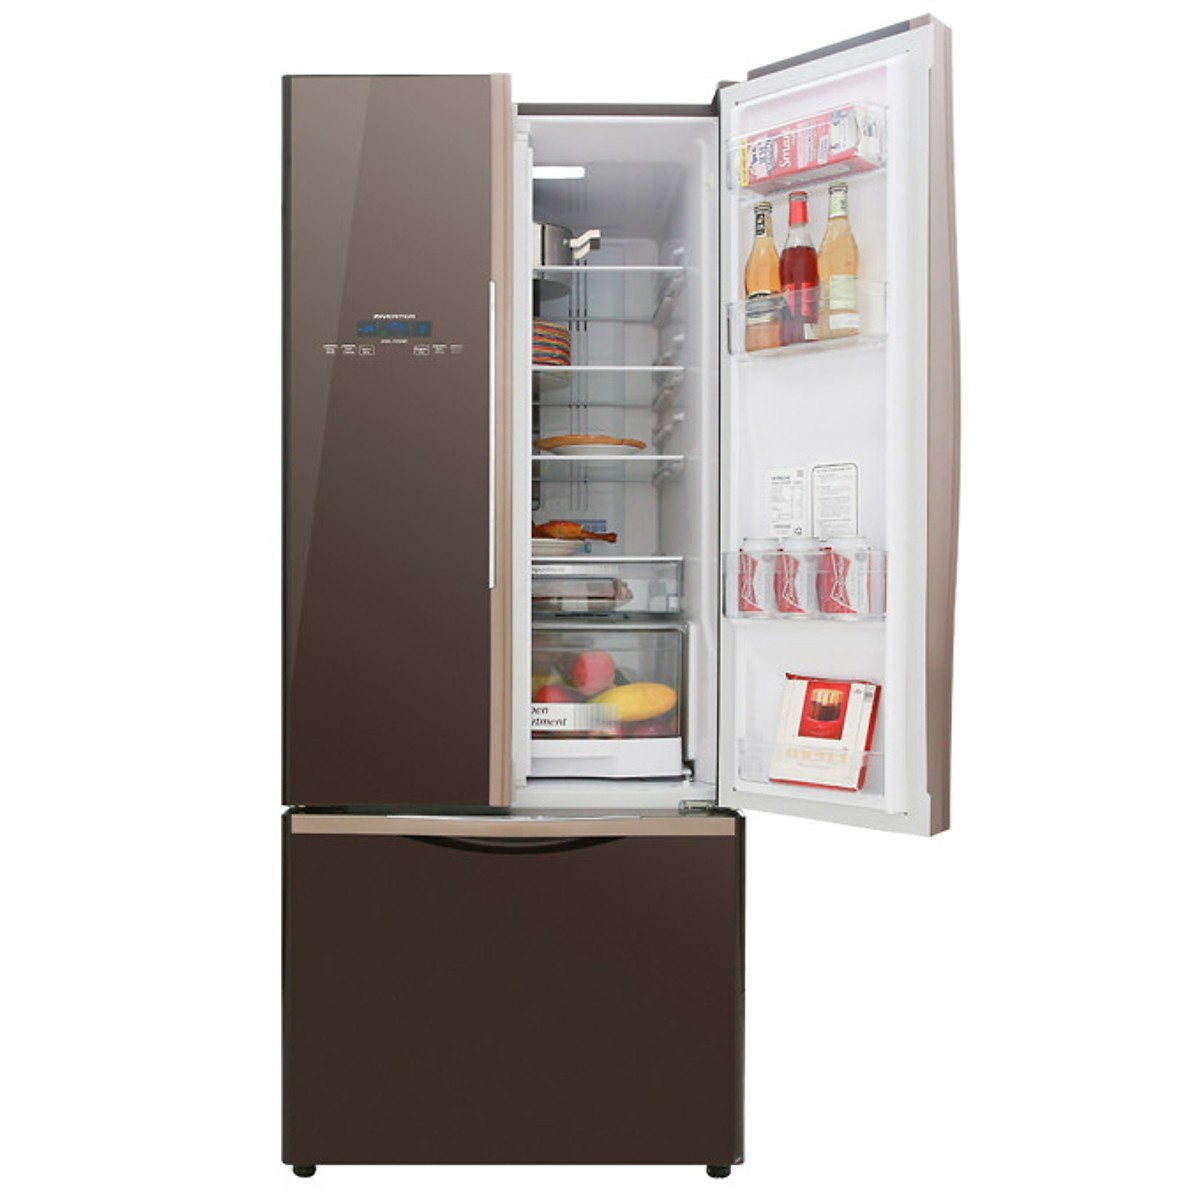 Tủ lạnh Hitachi Inverter 429 lít R-WB545PGV2 GBW - Hàng Chính Hãng + Tặng Bình Đun Siêu Tốc